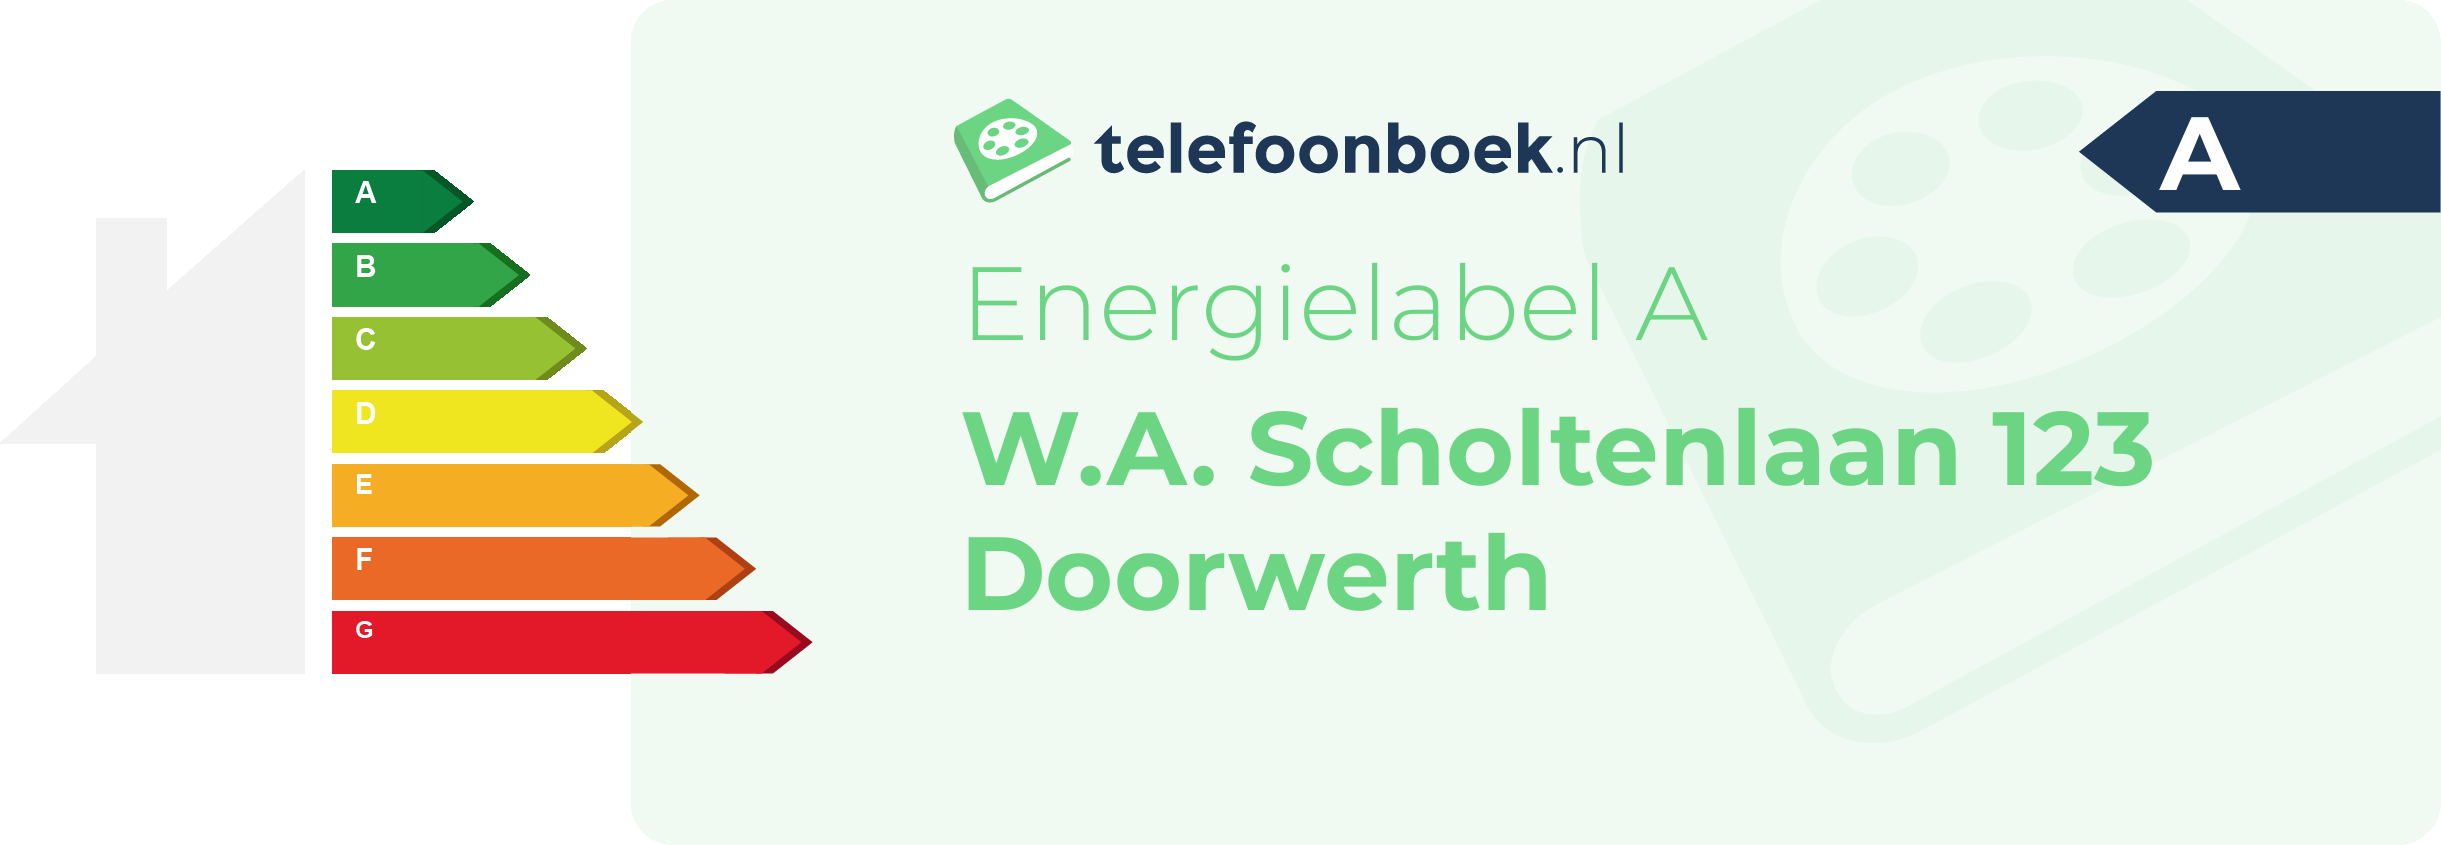 Energielabel W.A. Scholtenlaan 123 Doorwerth